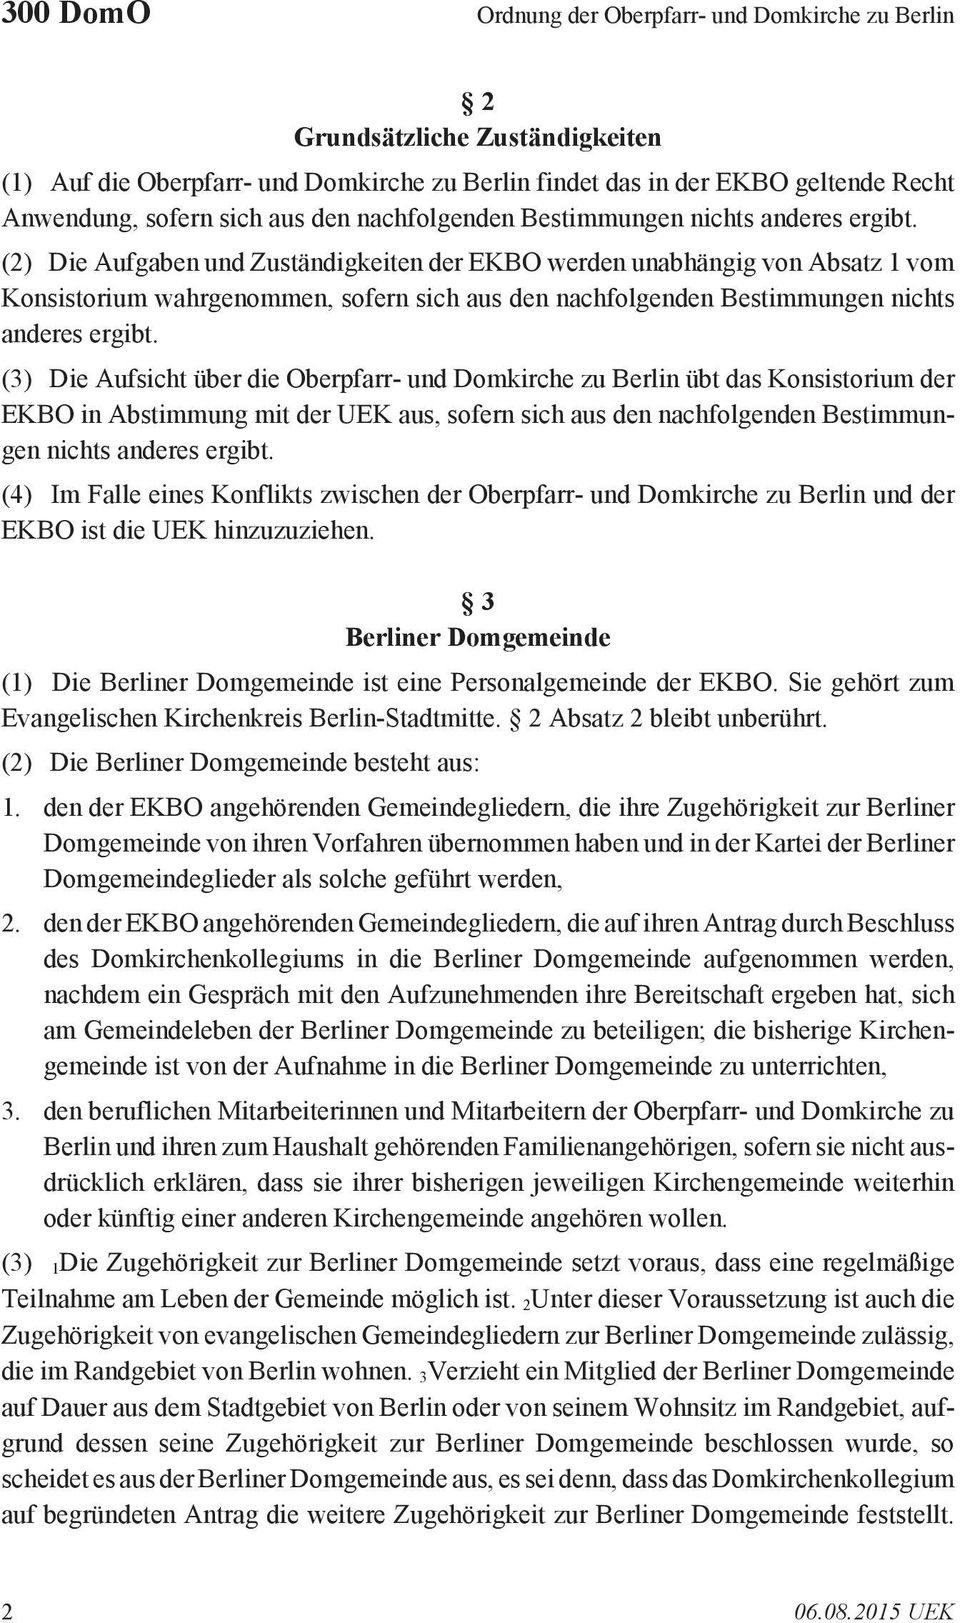 (2) Die Aufgaben und Zuständigkeiten der EKBO werden unabhängig von Absatz 1 vom Konsistorium wahrgenommen, sofern sich  (3) Die Aufsicht über die Oberpfarr- und Domkirche zu Berlin übt das